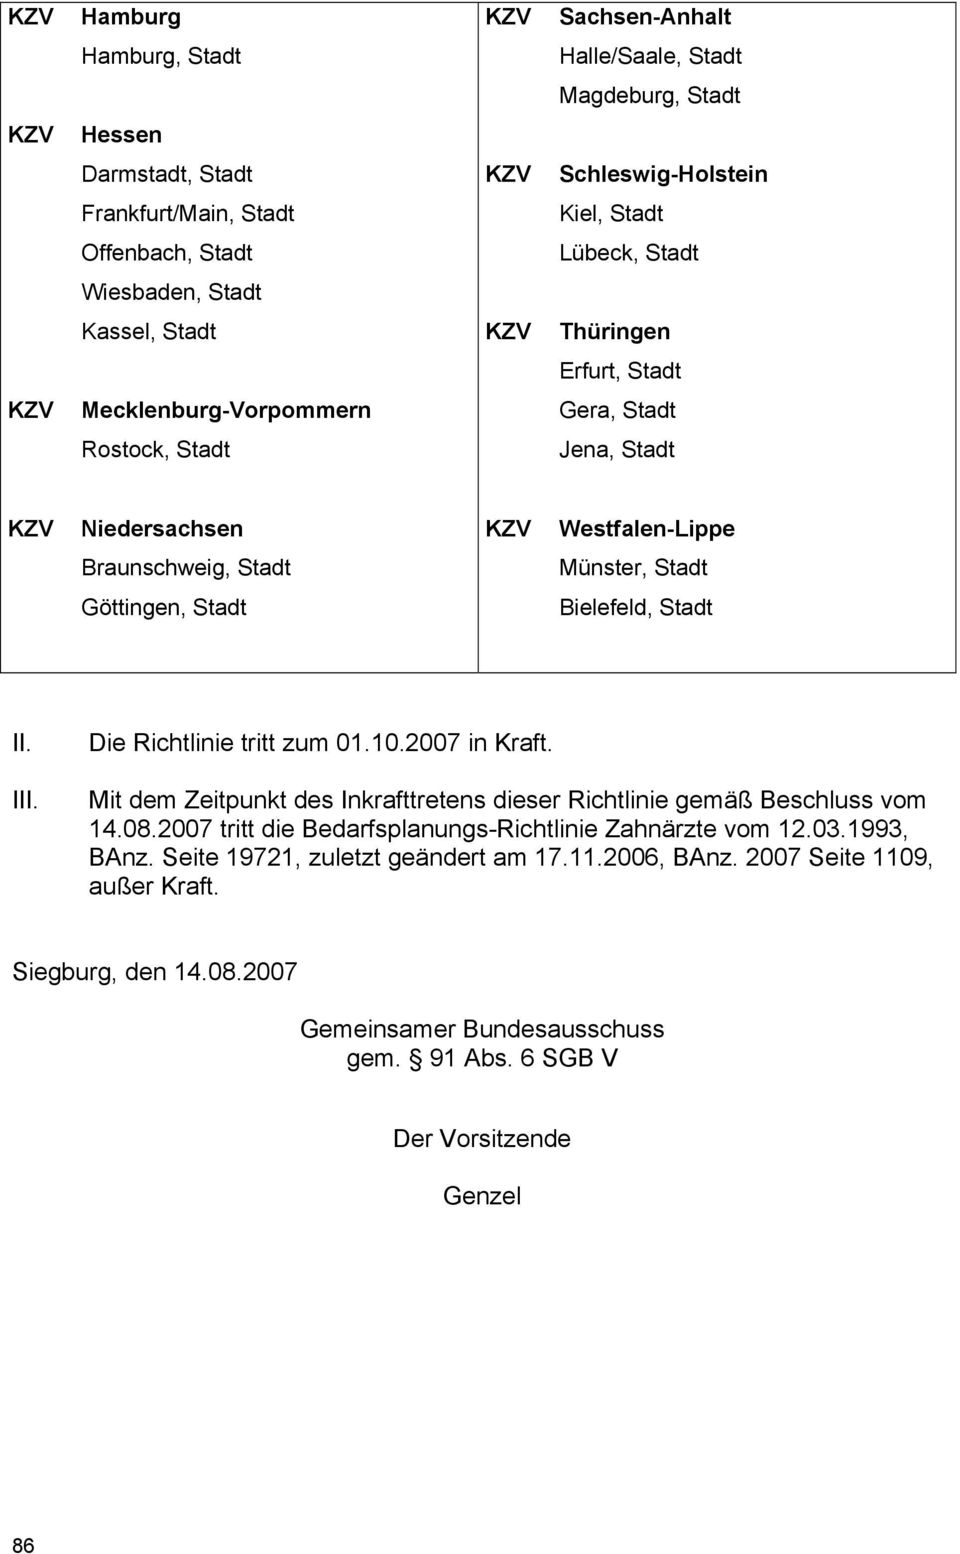 Bielefeld, Stadt II. III. Die Richtlinie tritt zum 01.10.2007 in Kraft. Mit dem Zeitpunkt des Inkrafttretens dieser Richtlinie gemäß Beschluss vom 14.08.